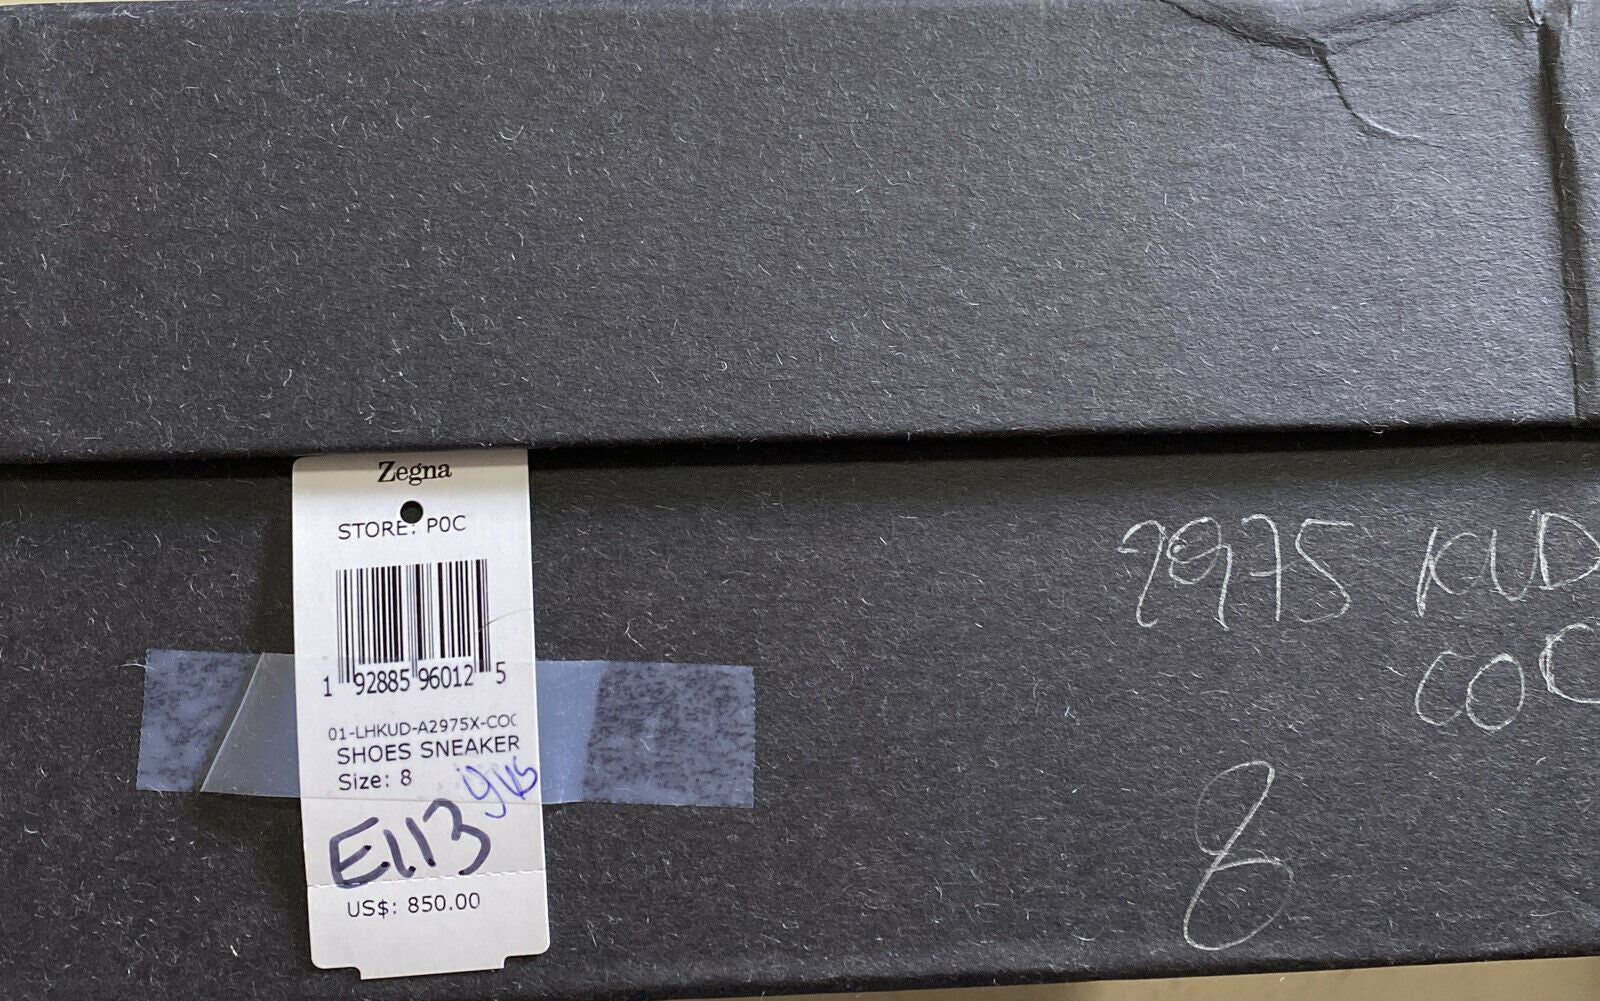 Новые замшевые/кожаные кроссовки Ermenegildo Zegna Couture за 850 долларов США LT Brown 9 US